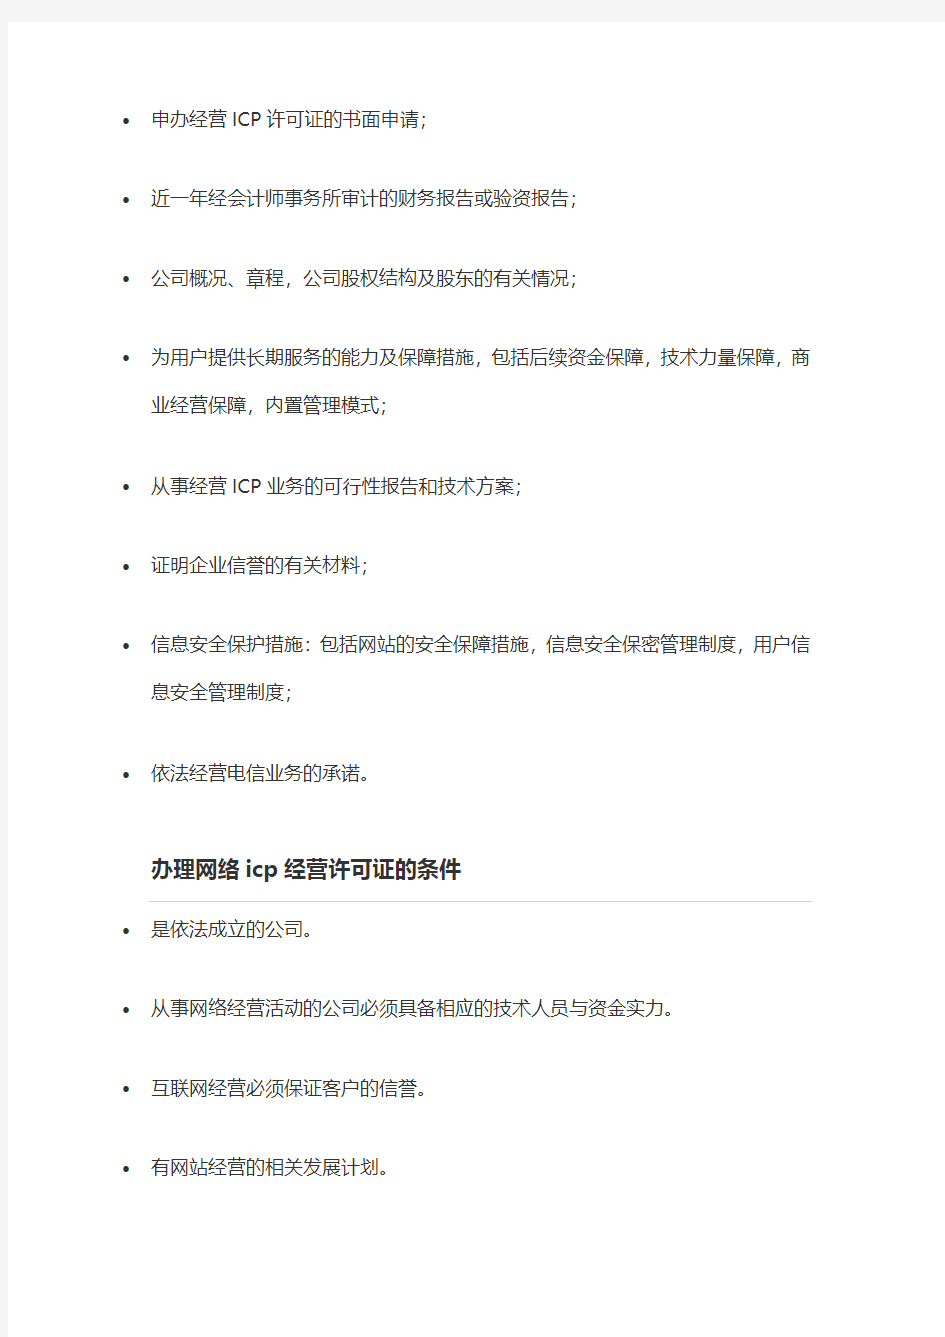 上海ICP经营许可证办理